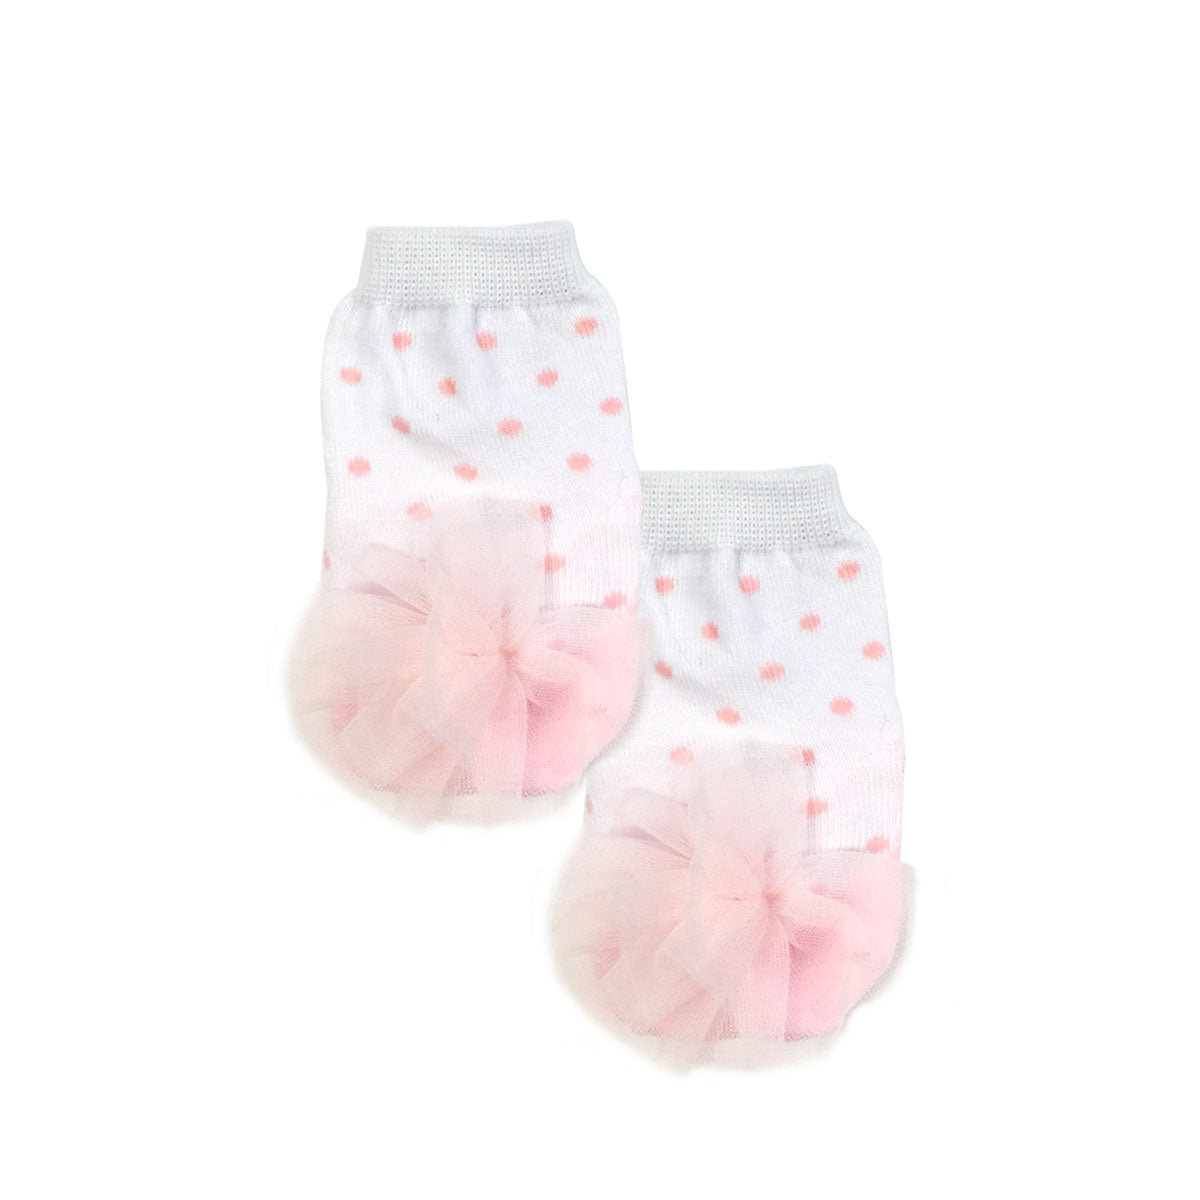 Wrapables Dottie Dot Non-Slip Ballet and Mary Jane Socks (Set of 2)